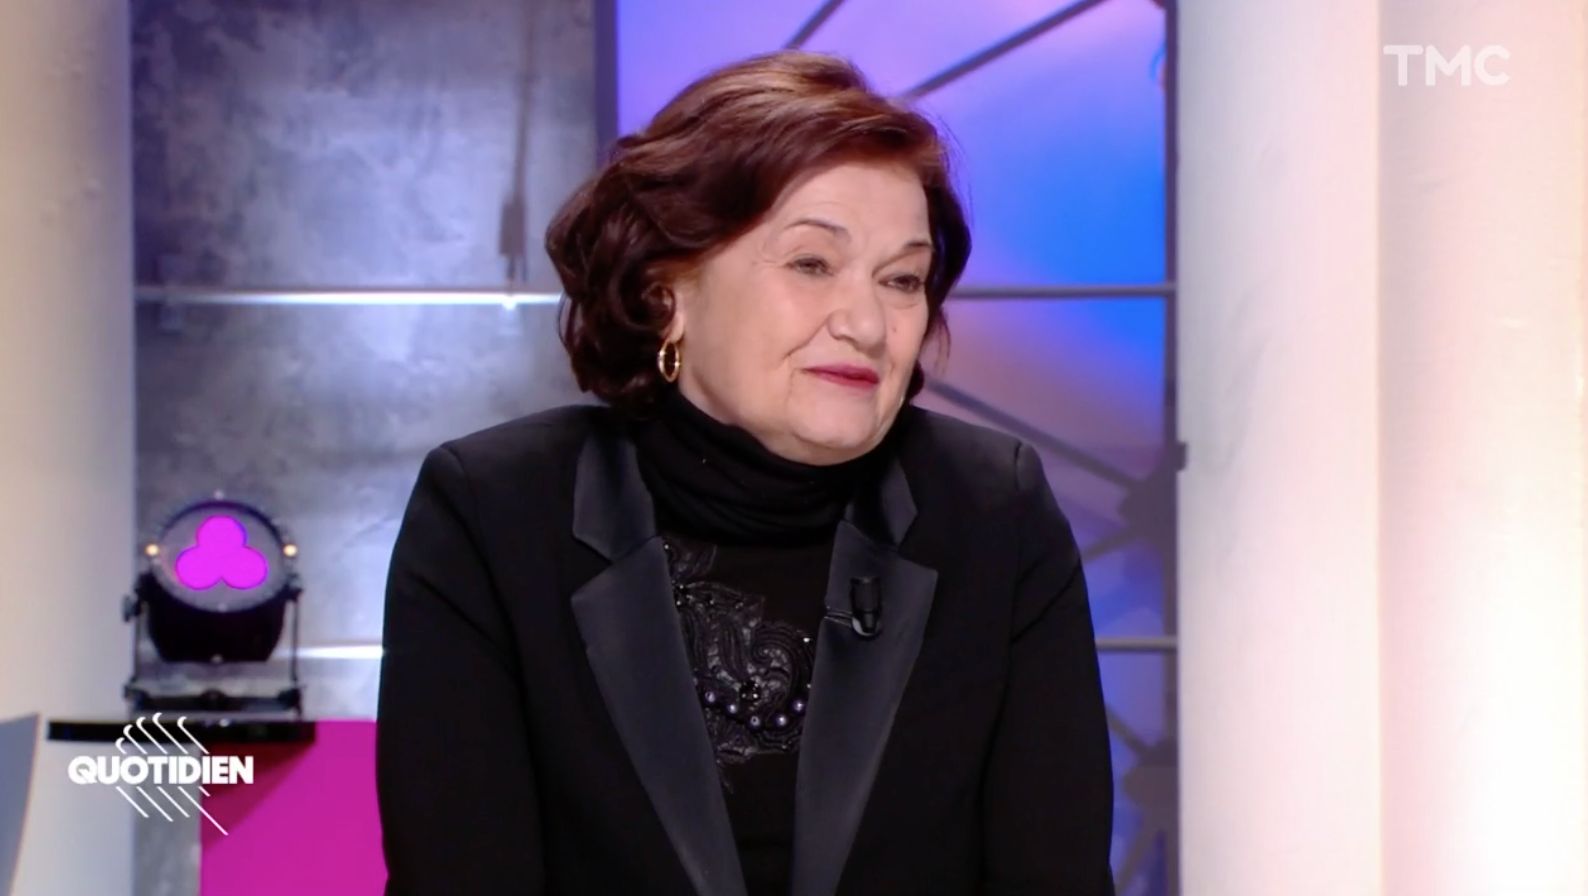 Capture d'écran de l'émission Quotidien du 10 mars 2021, avec Elisabeth Roudinesco, invitée de Yann